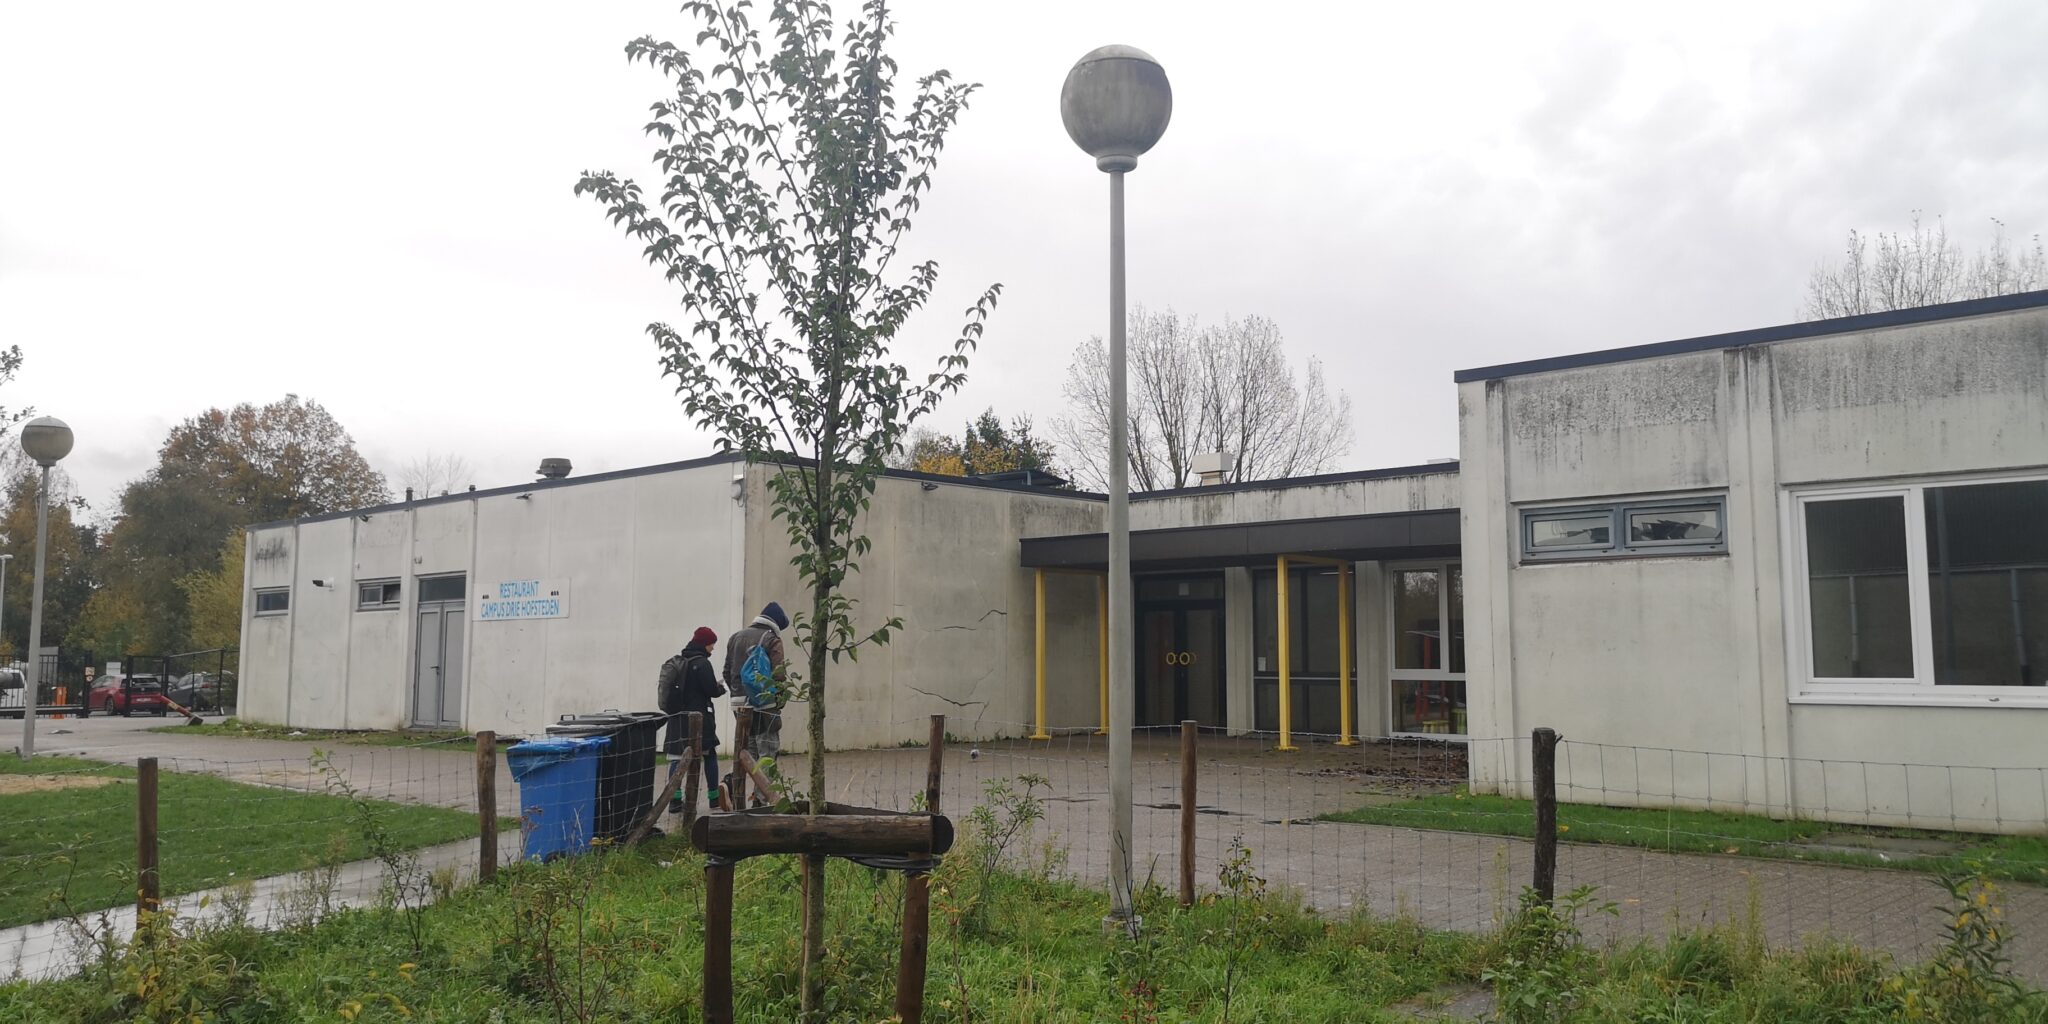 Kaksi henkilöä kävelee kohti harmaan koulurakennuksen sisäänkäyntiä sateisessa säässä.